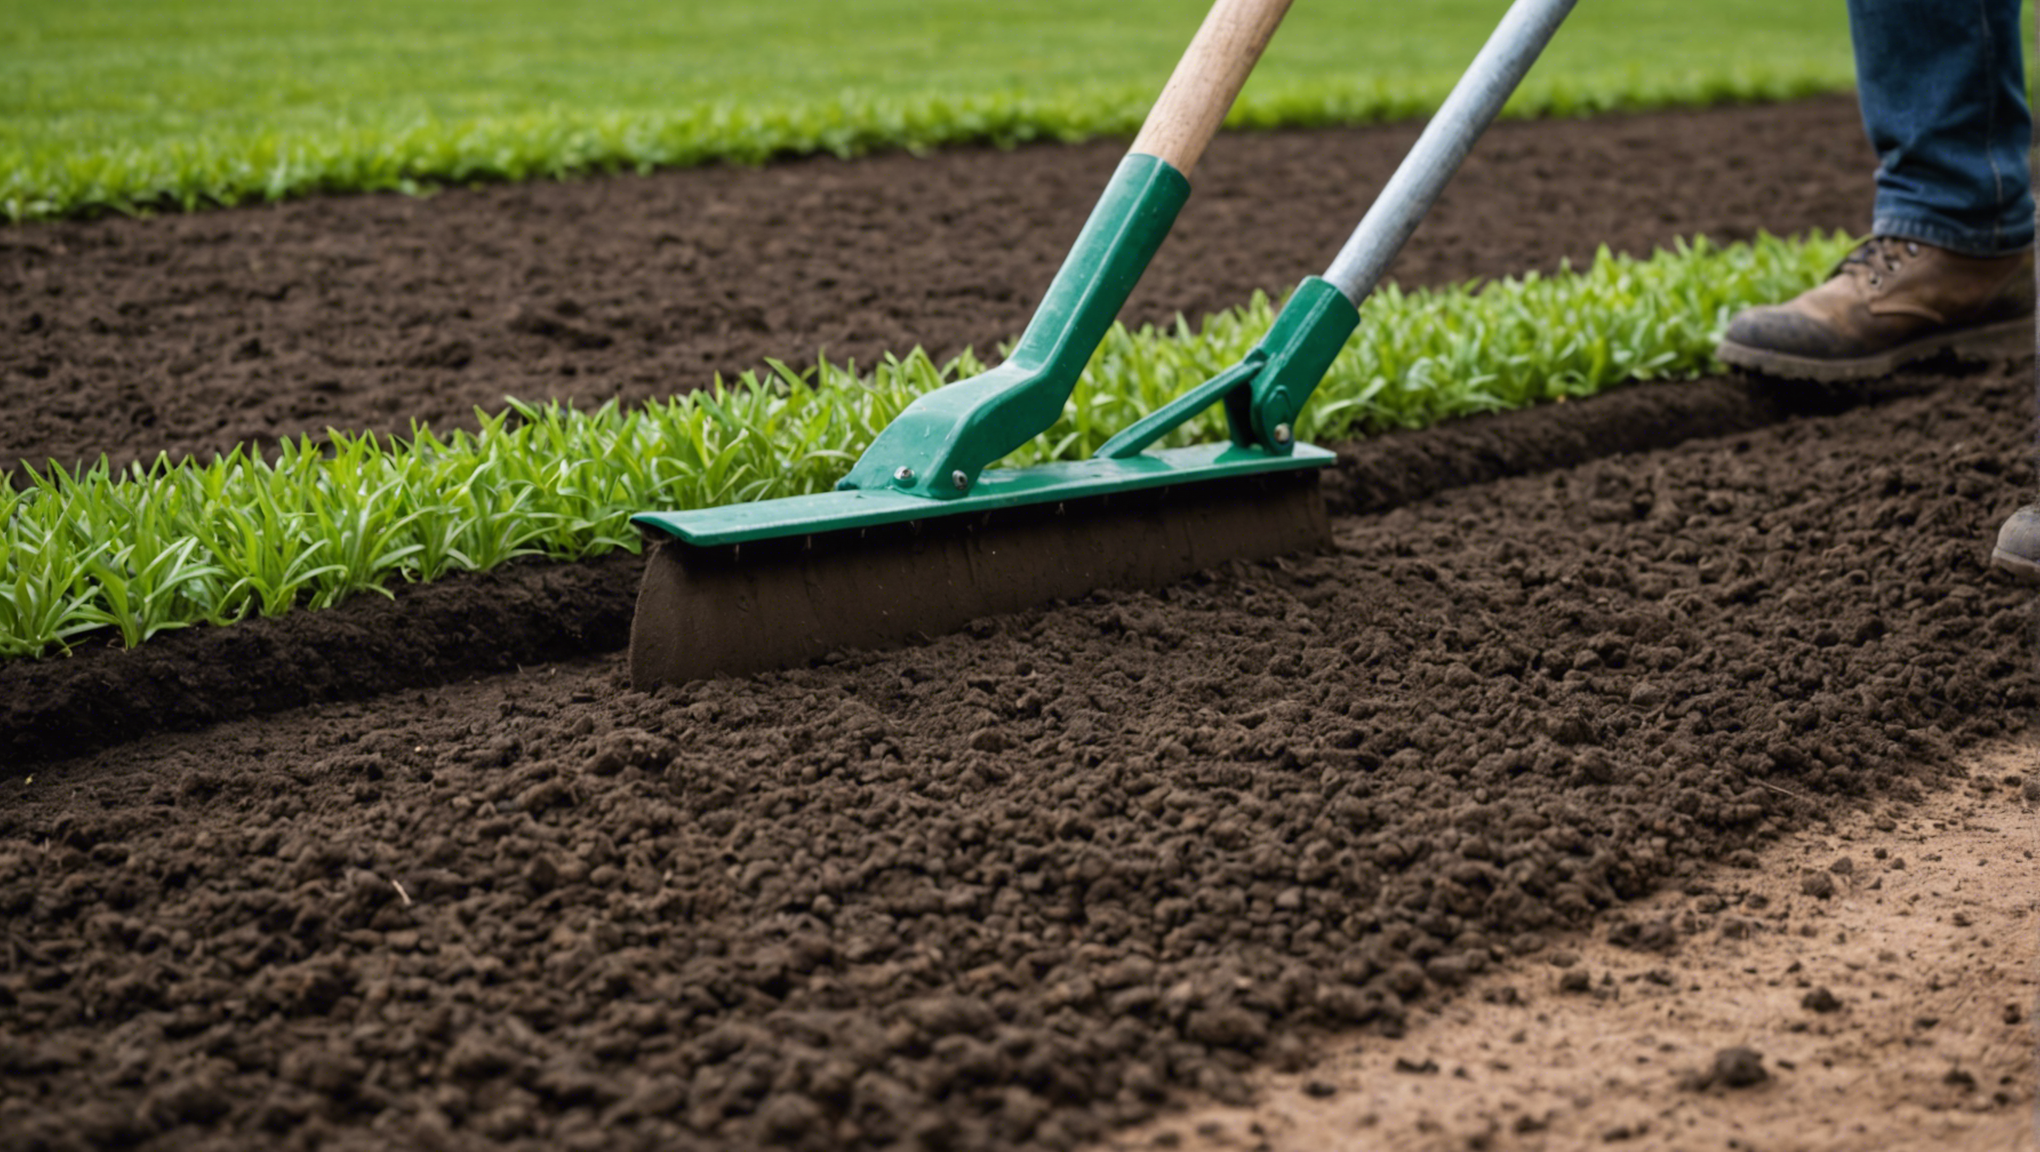 découvrez comment niveler efficacement le sol de votre jardin avec nos conseils pratiques et astuces pour obtenir une surface lisse et uniforme.